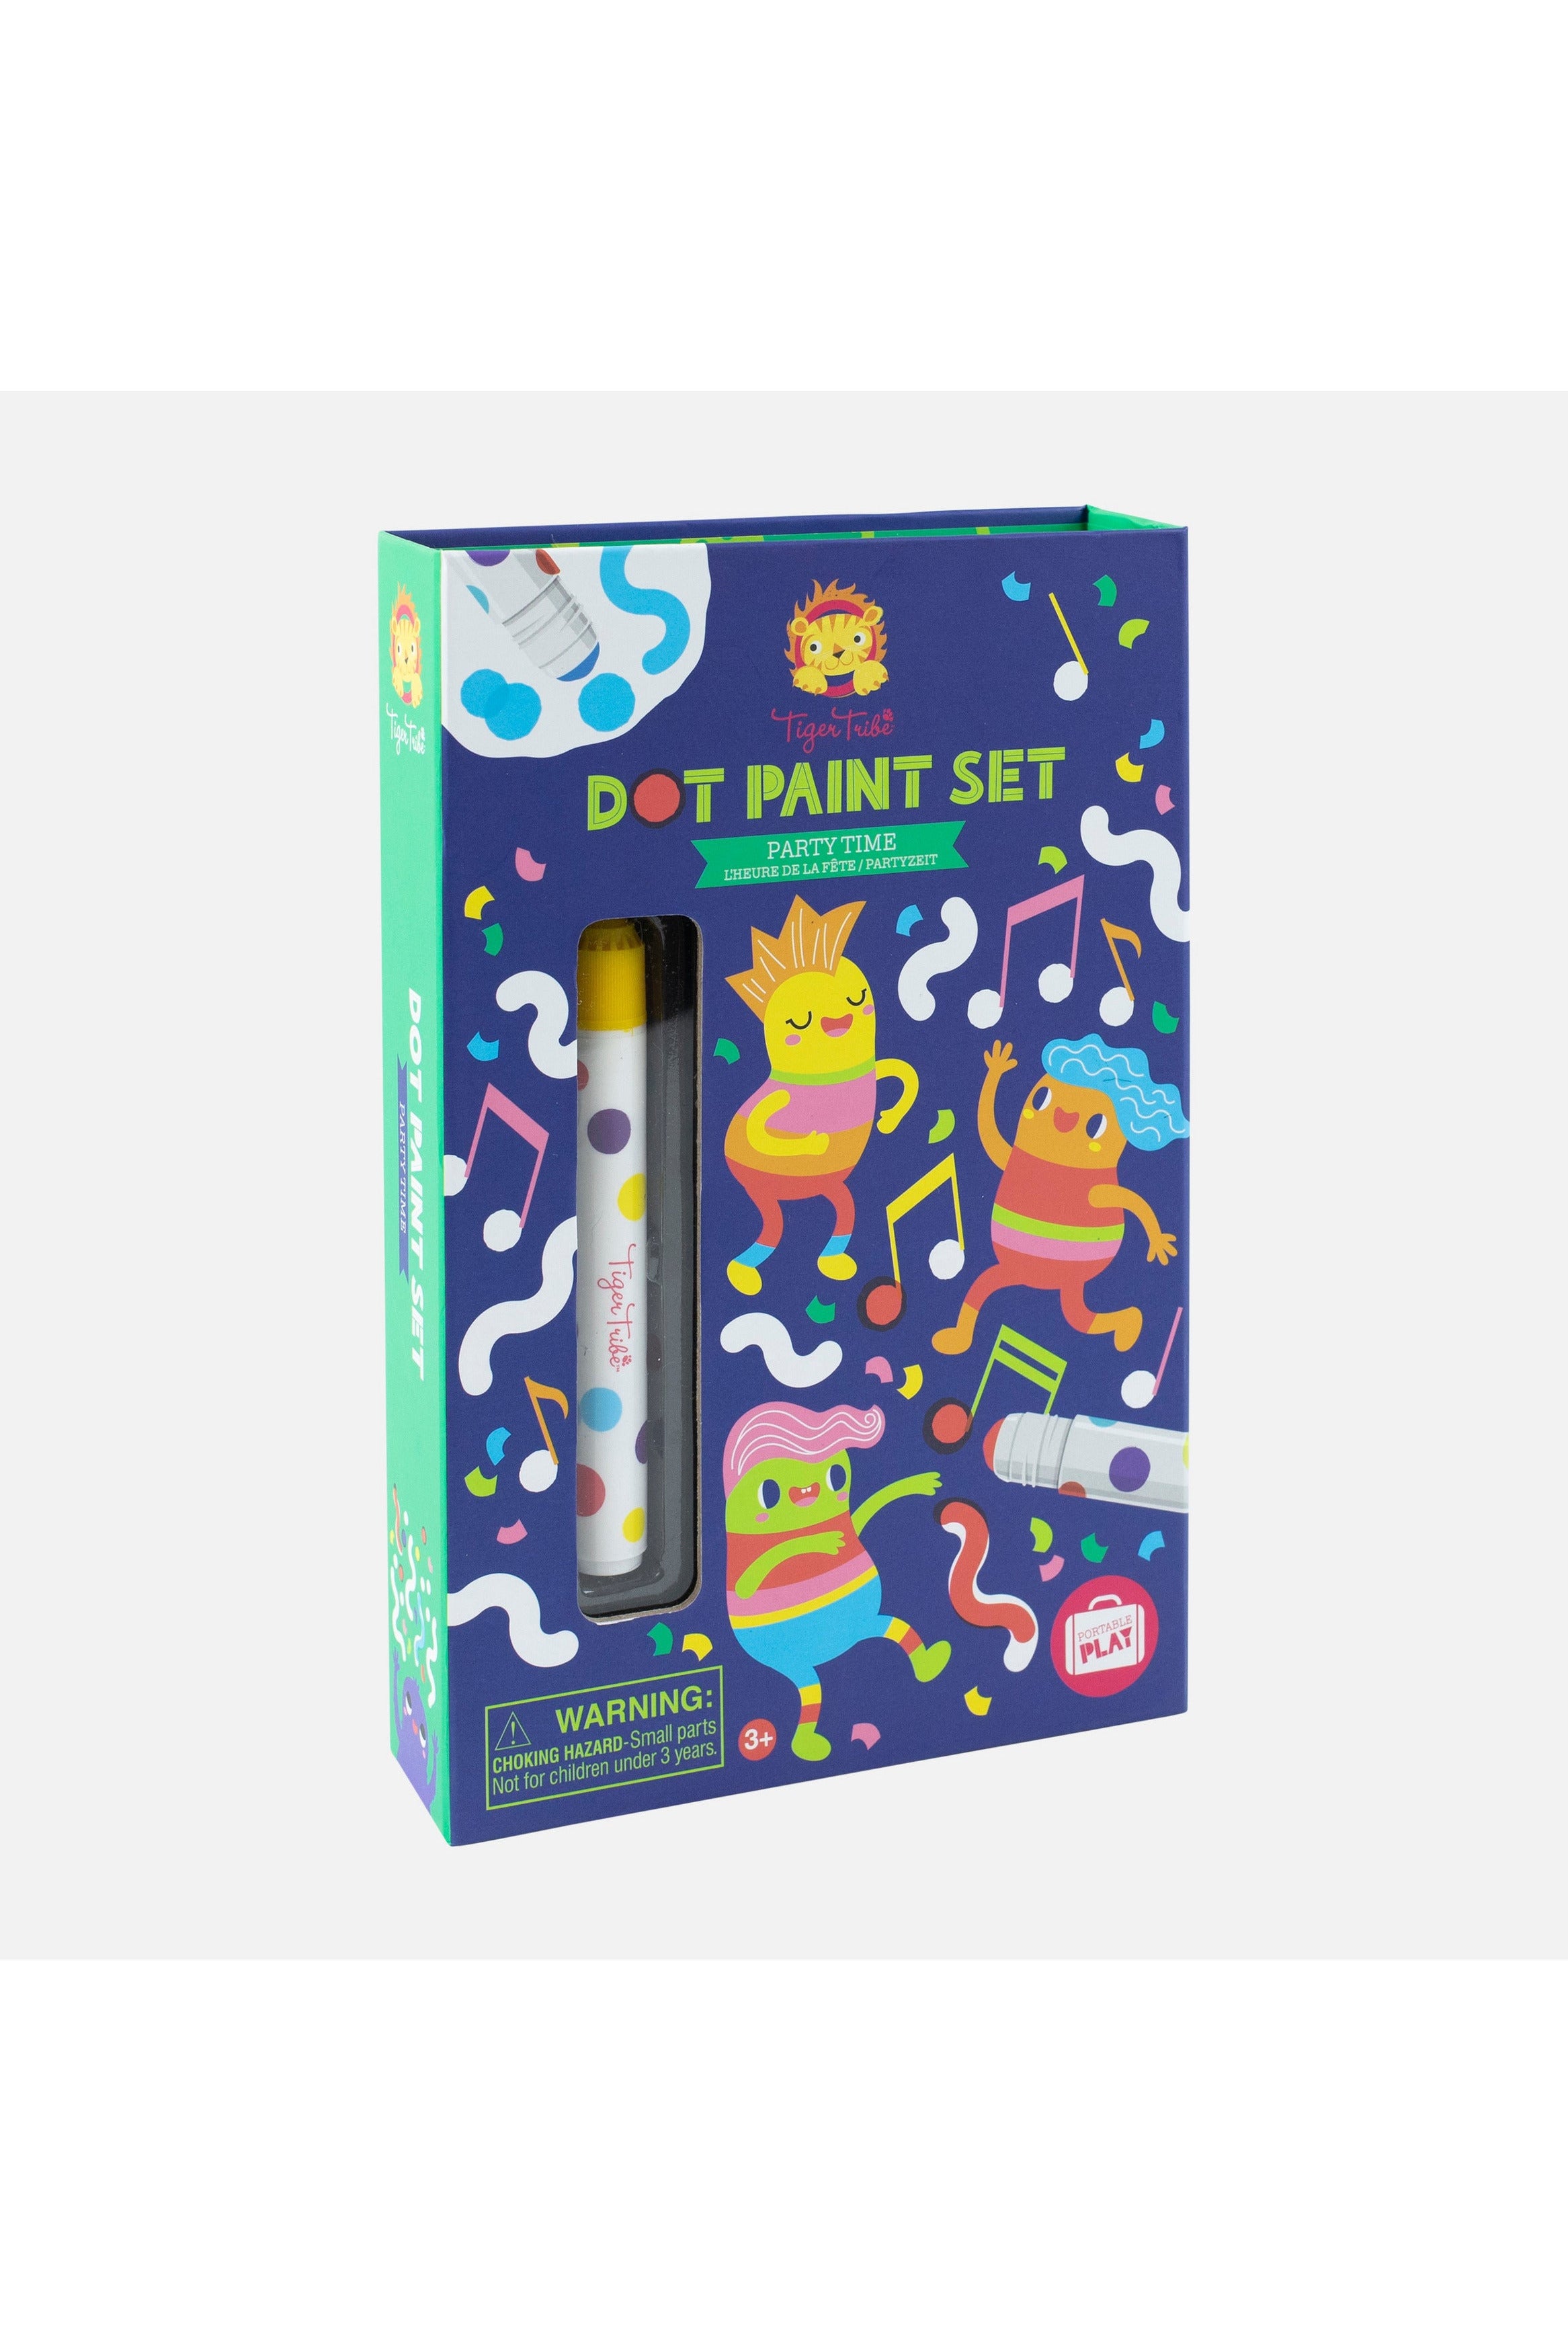 Dot Paint Set - Partytime